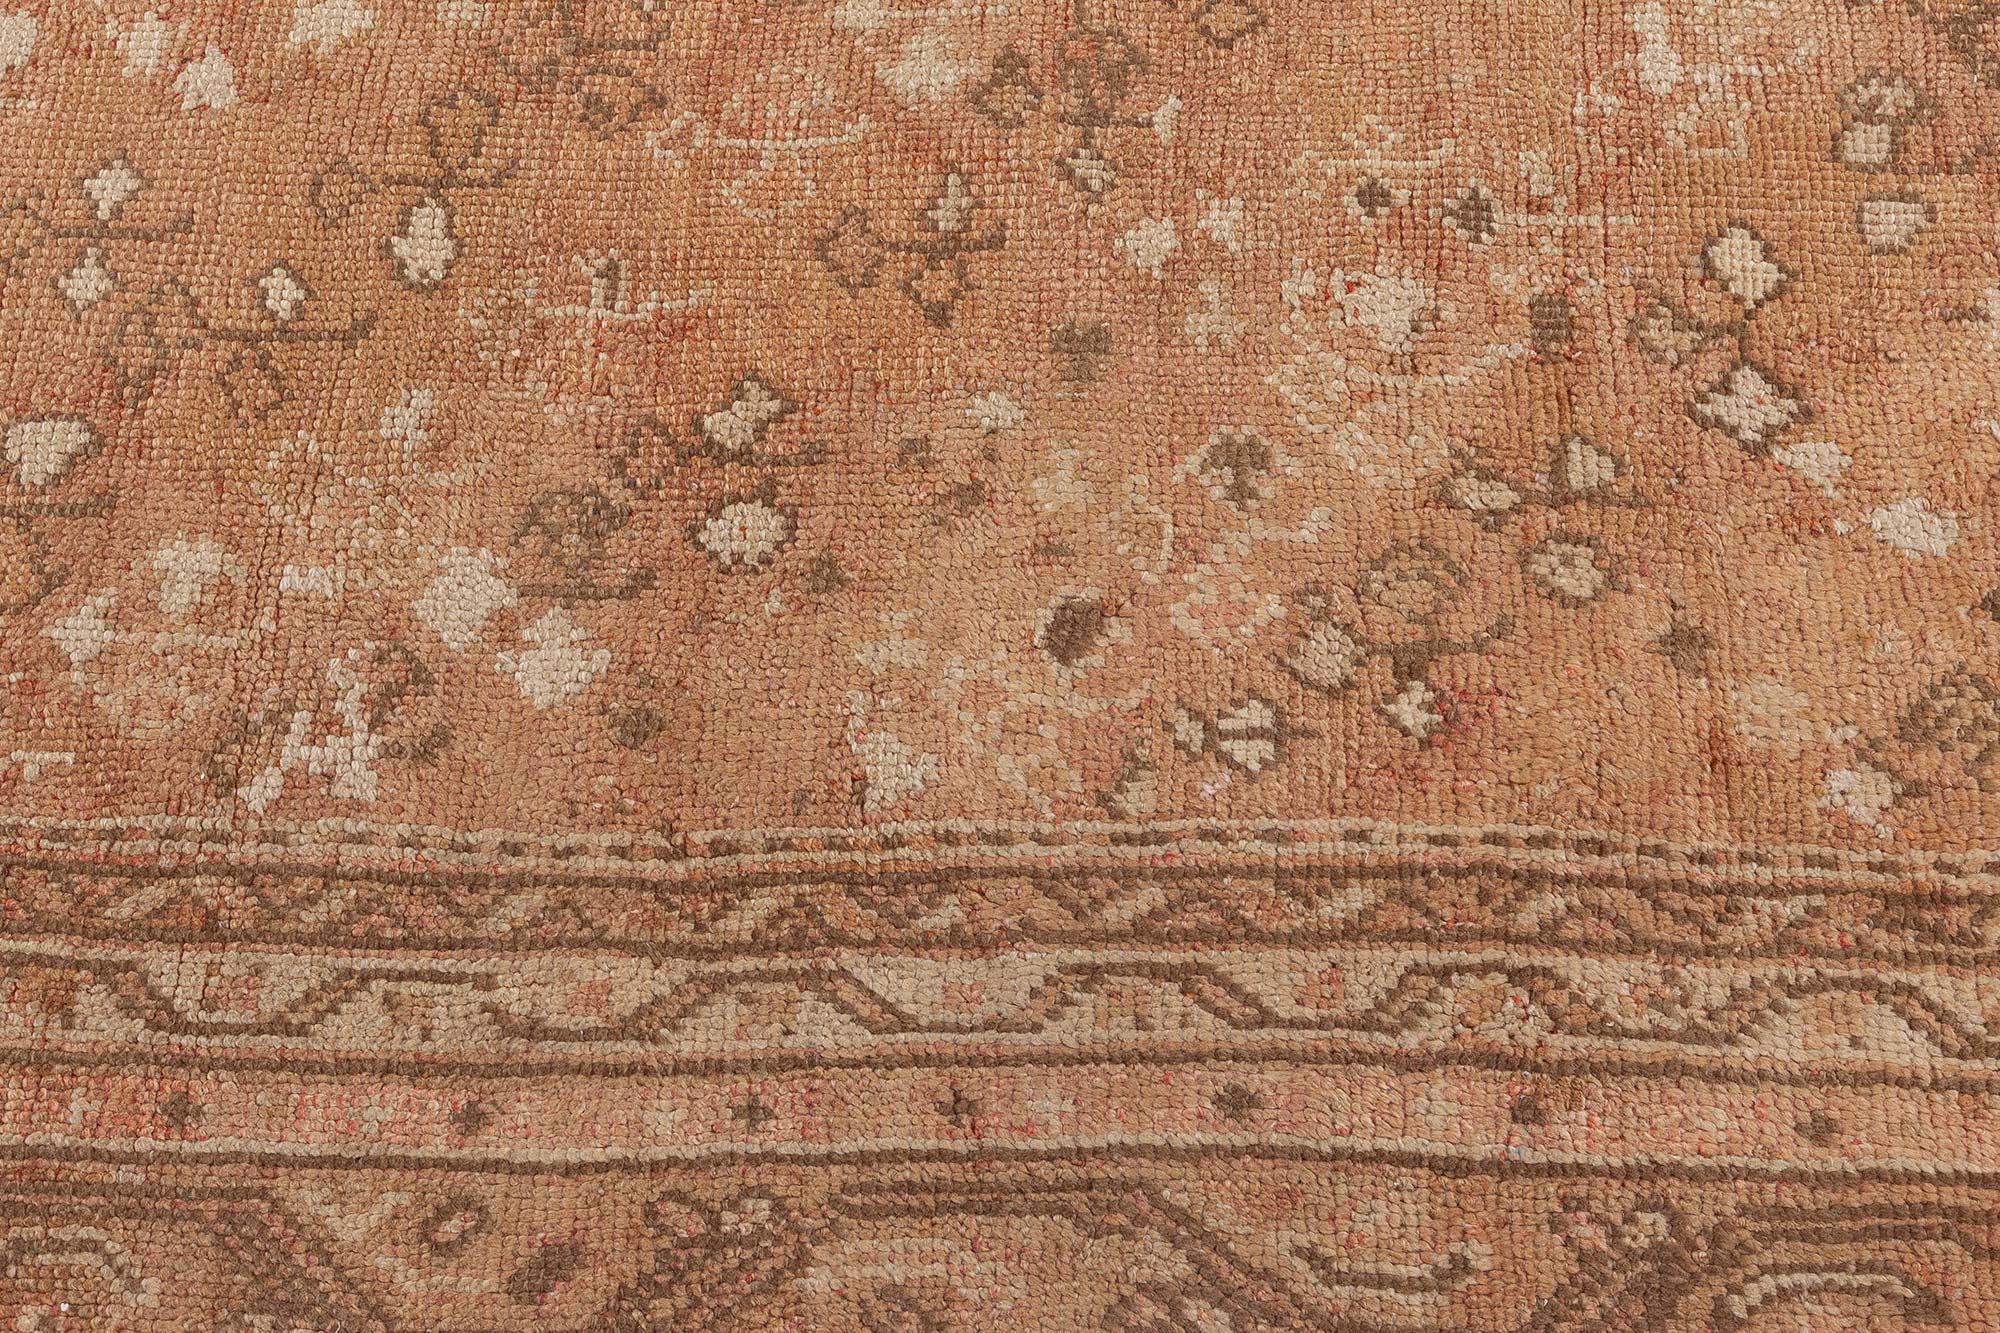 Authentic Turkish oushak handmade wool rug
Size: 11'10